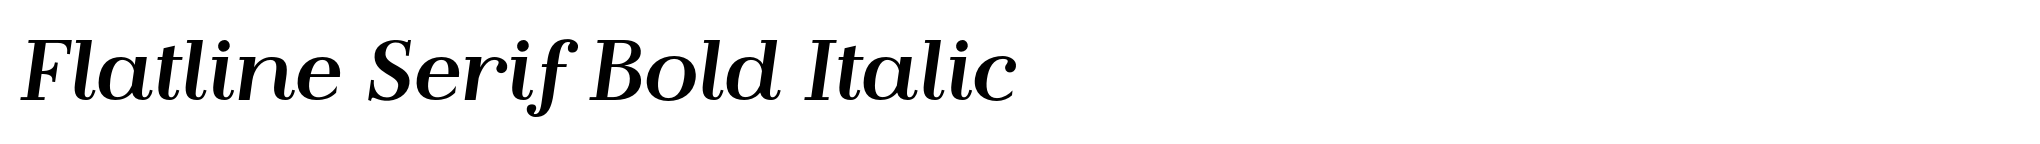 Flatline Serif Bold Italic image